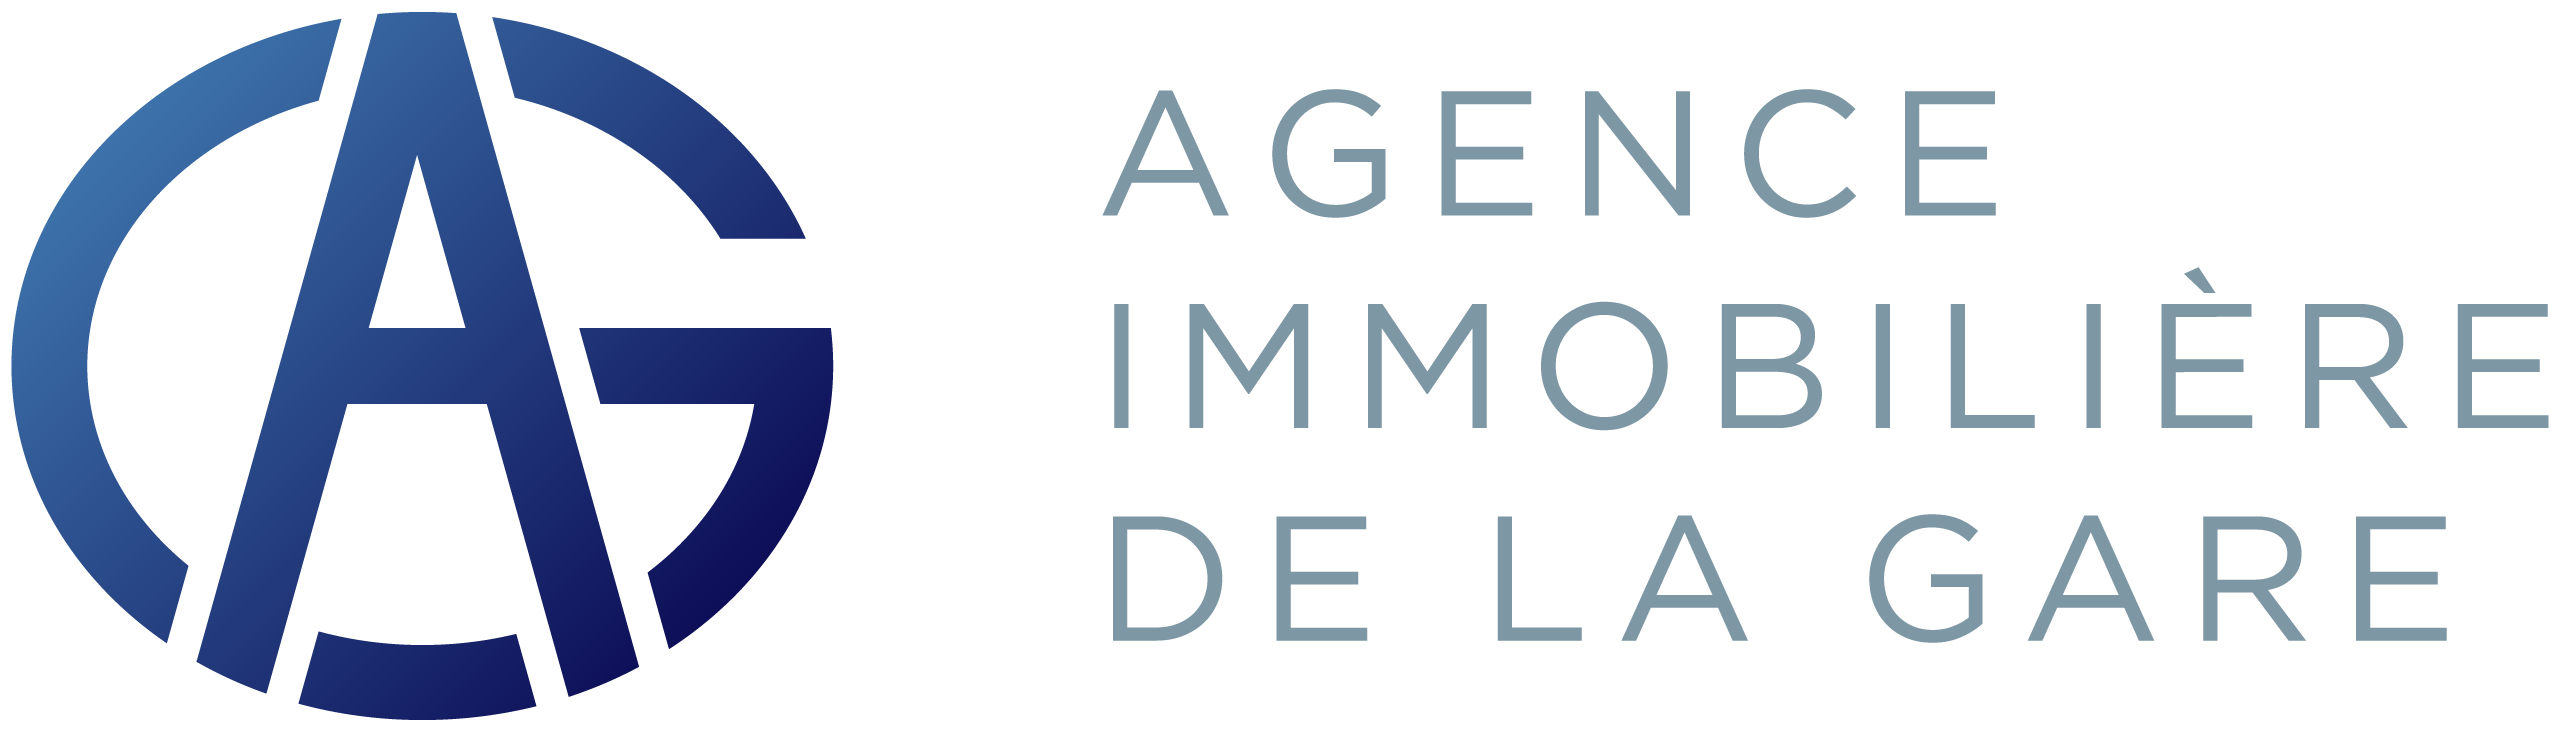 Agence Immobilìere de la Gare Monaco